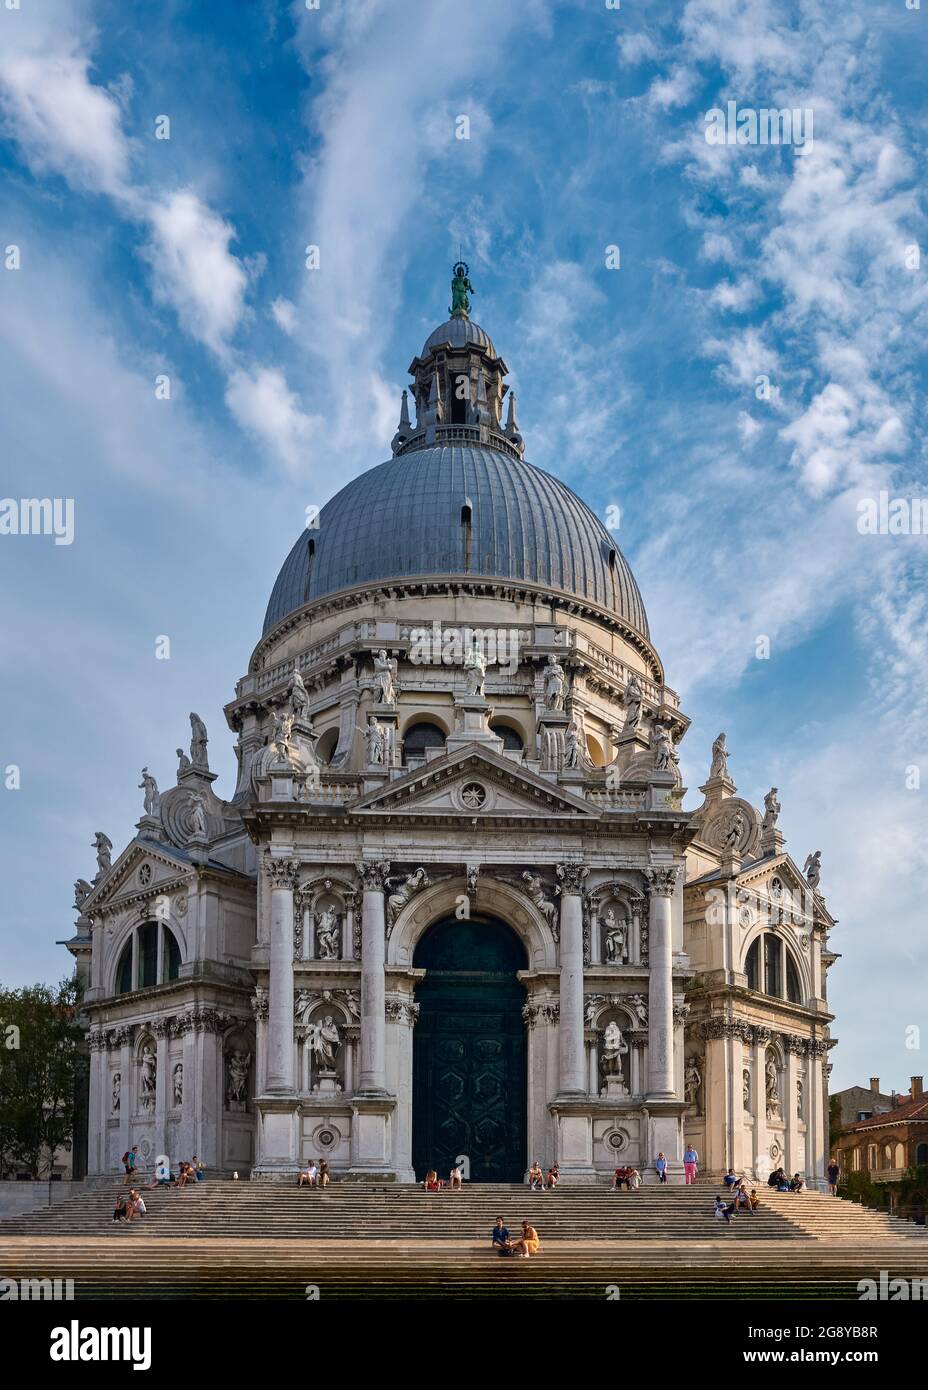 Schöner Blick auf die berühmte Basilika Santa Maria della Salute oder die Heilige Maria von der Gesundheit am Ufer des Canal Grande, Venedig, Italien. Stockfoto